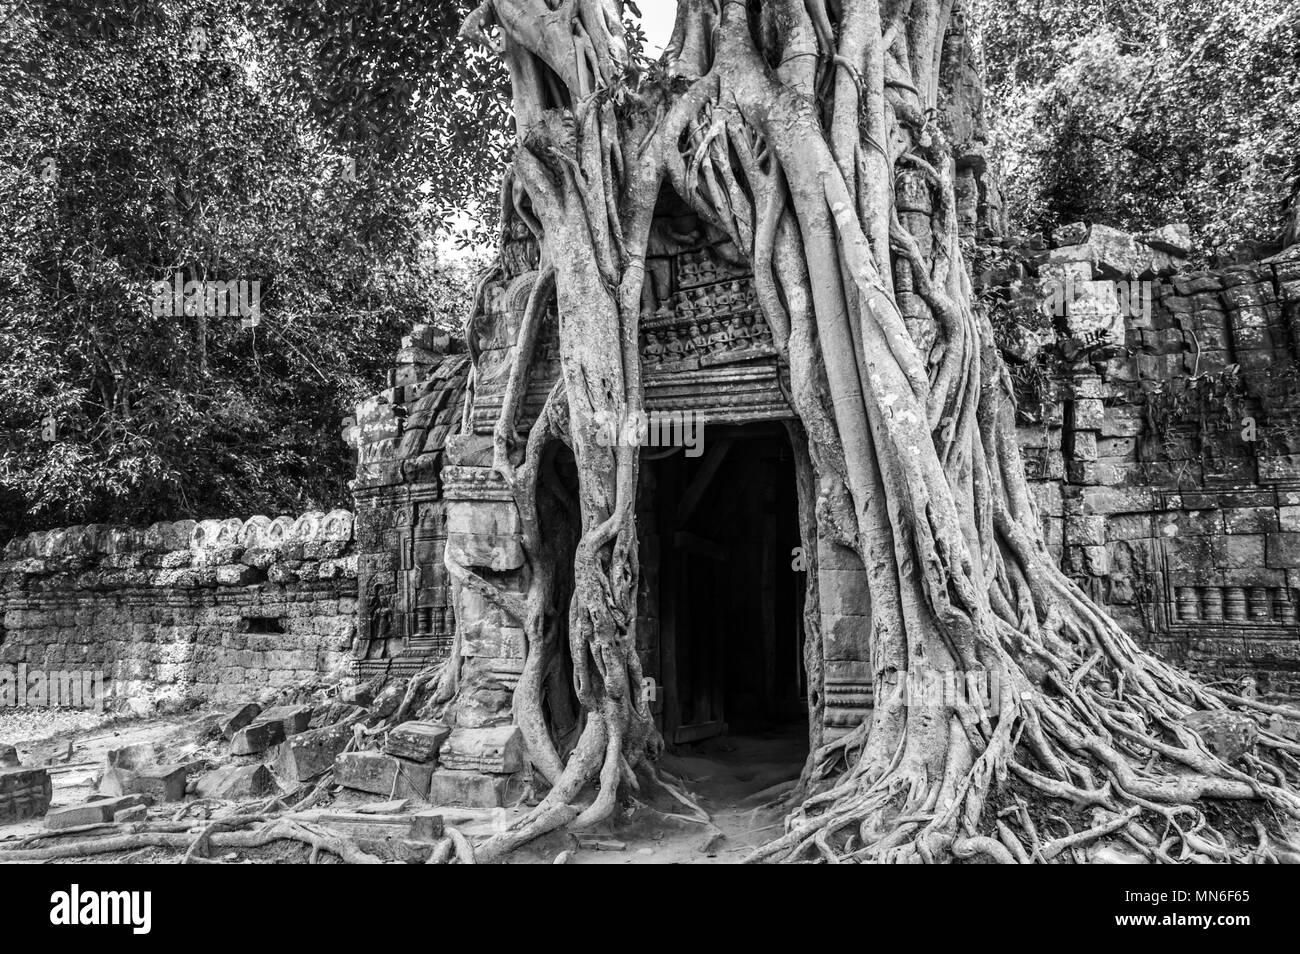 Las raíces de un árbol de banyan de Ta Prohm templo de Angkor, Siem Rep, Camboya Foto de stock